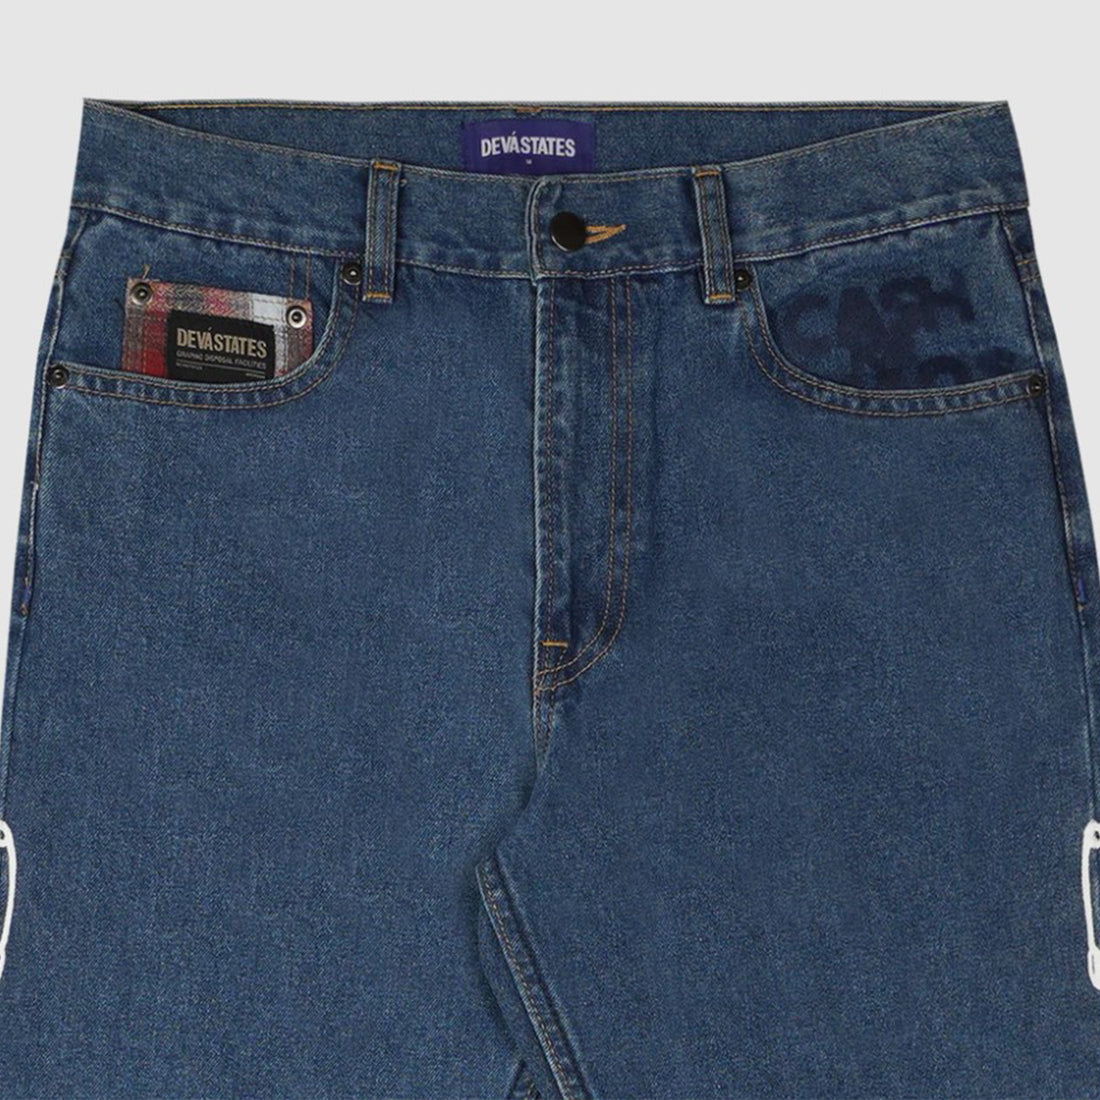 Jeans Devà States - Denim Pants Chaos -Blu